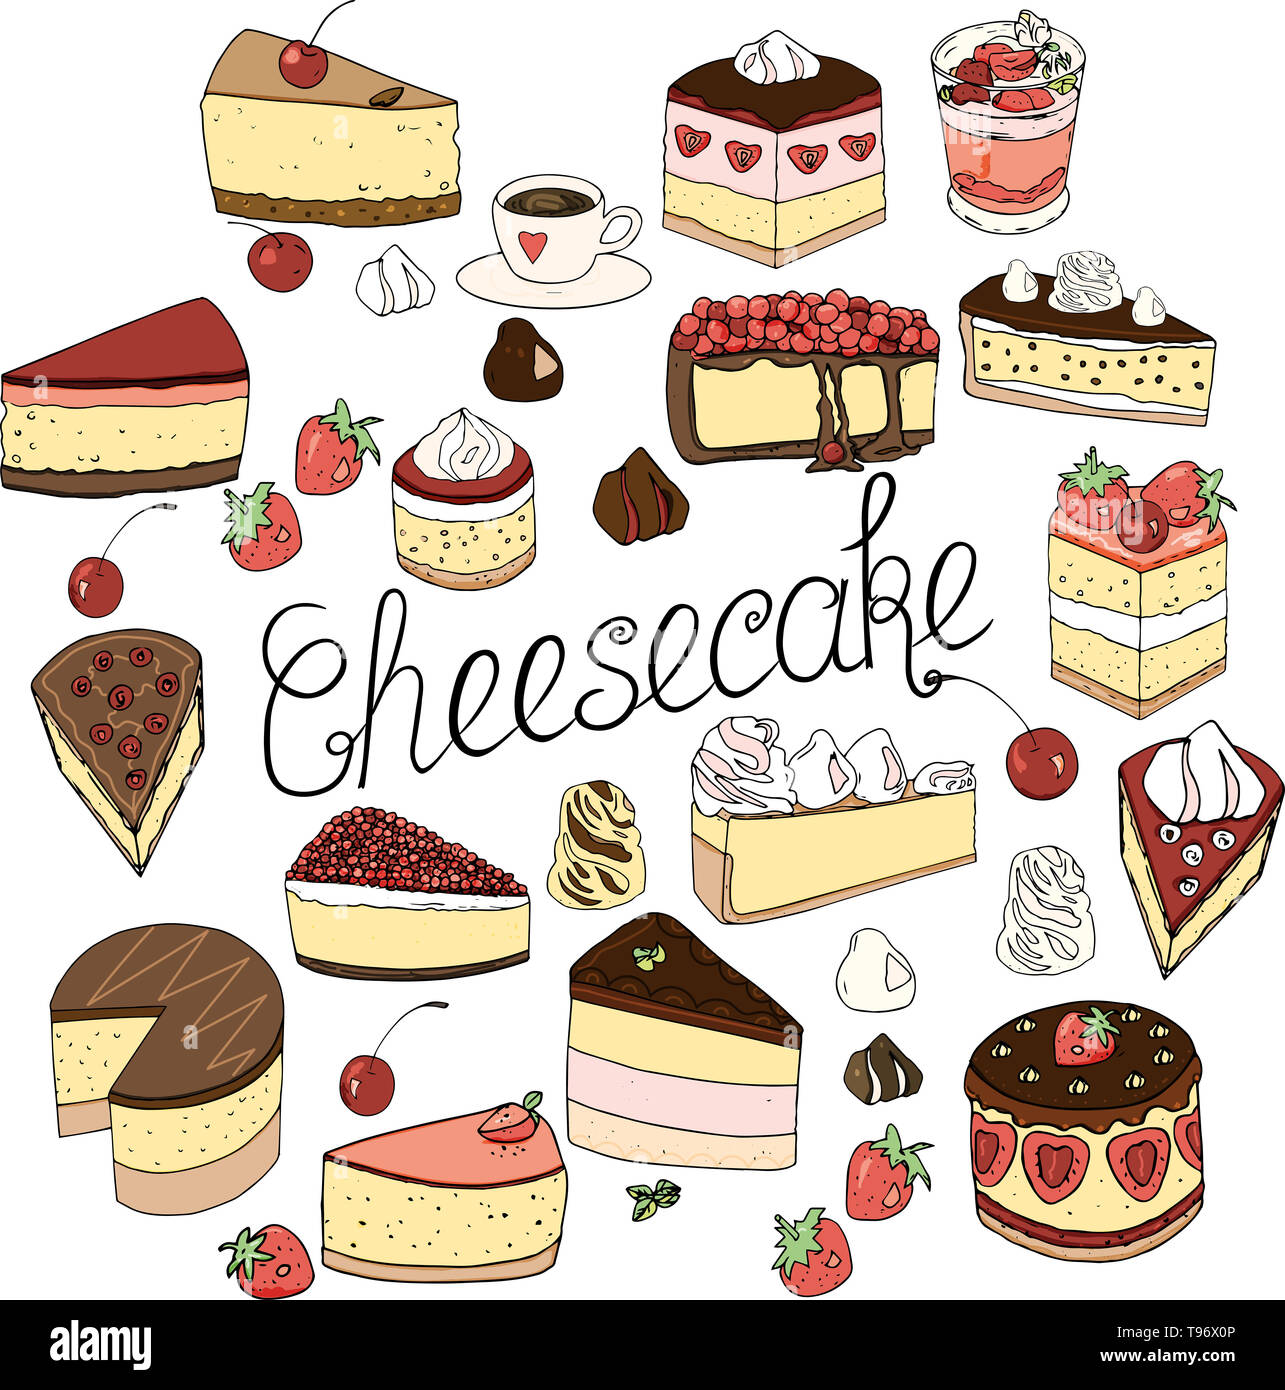 Un set di cheesecake è costituito da elementi di torte e pasticcini, isolato doodle set design decorazione e disegnati a mano nello stile di disegno naif. Foto Stock